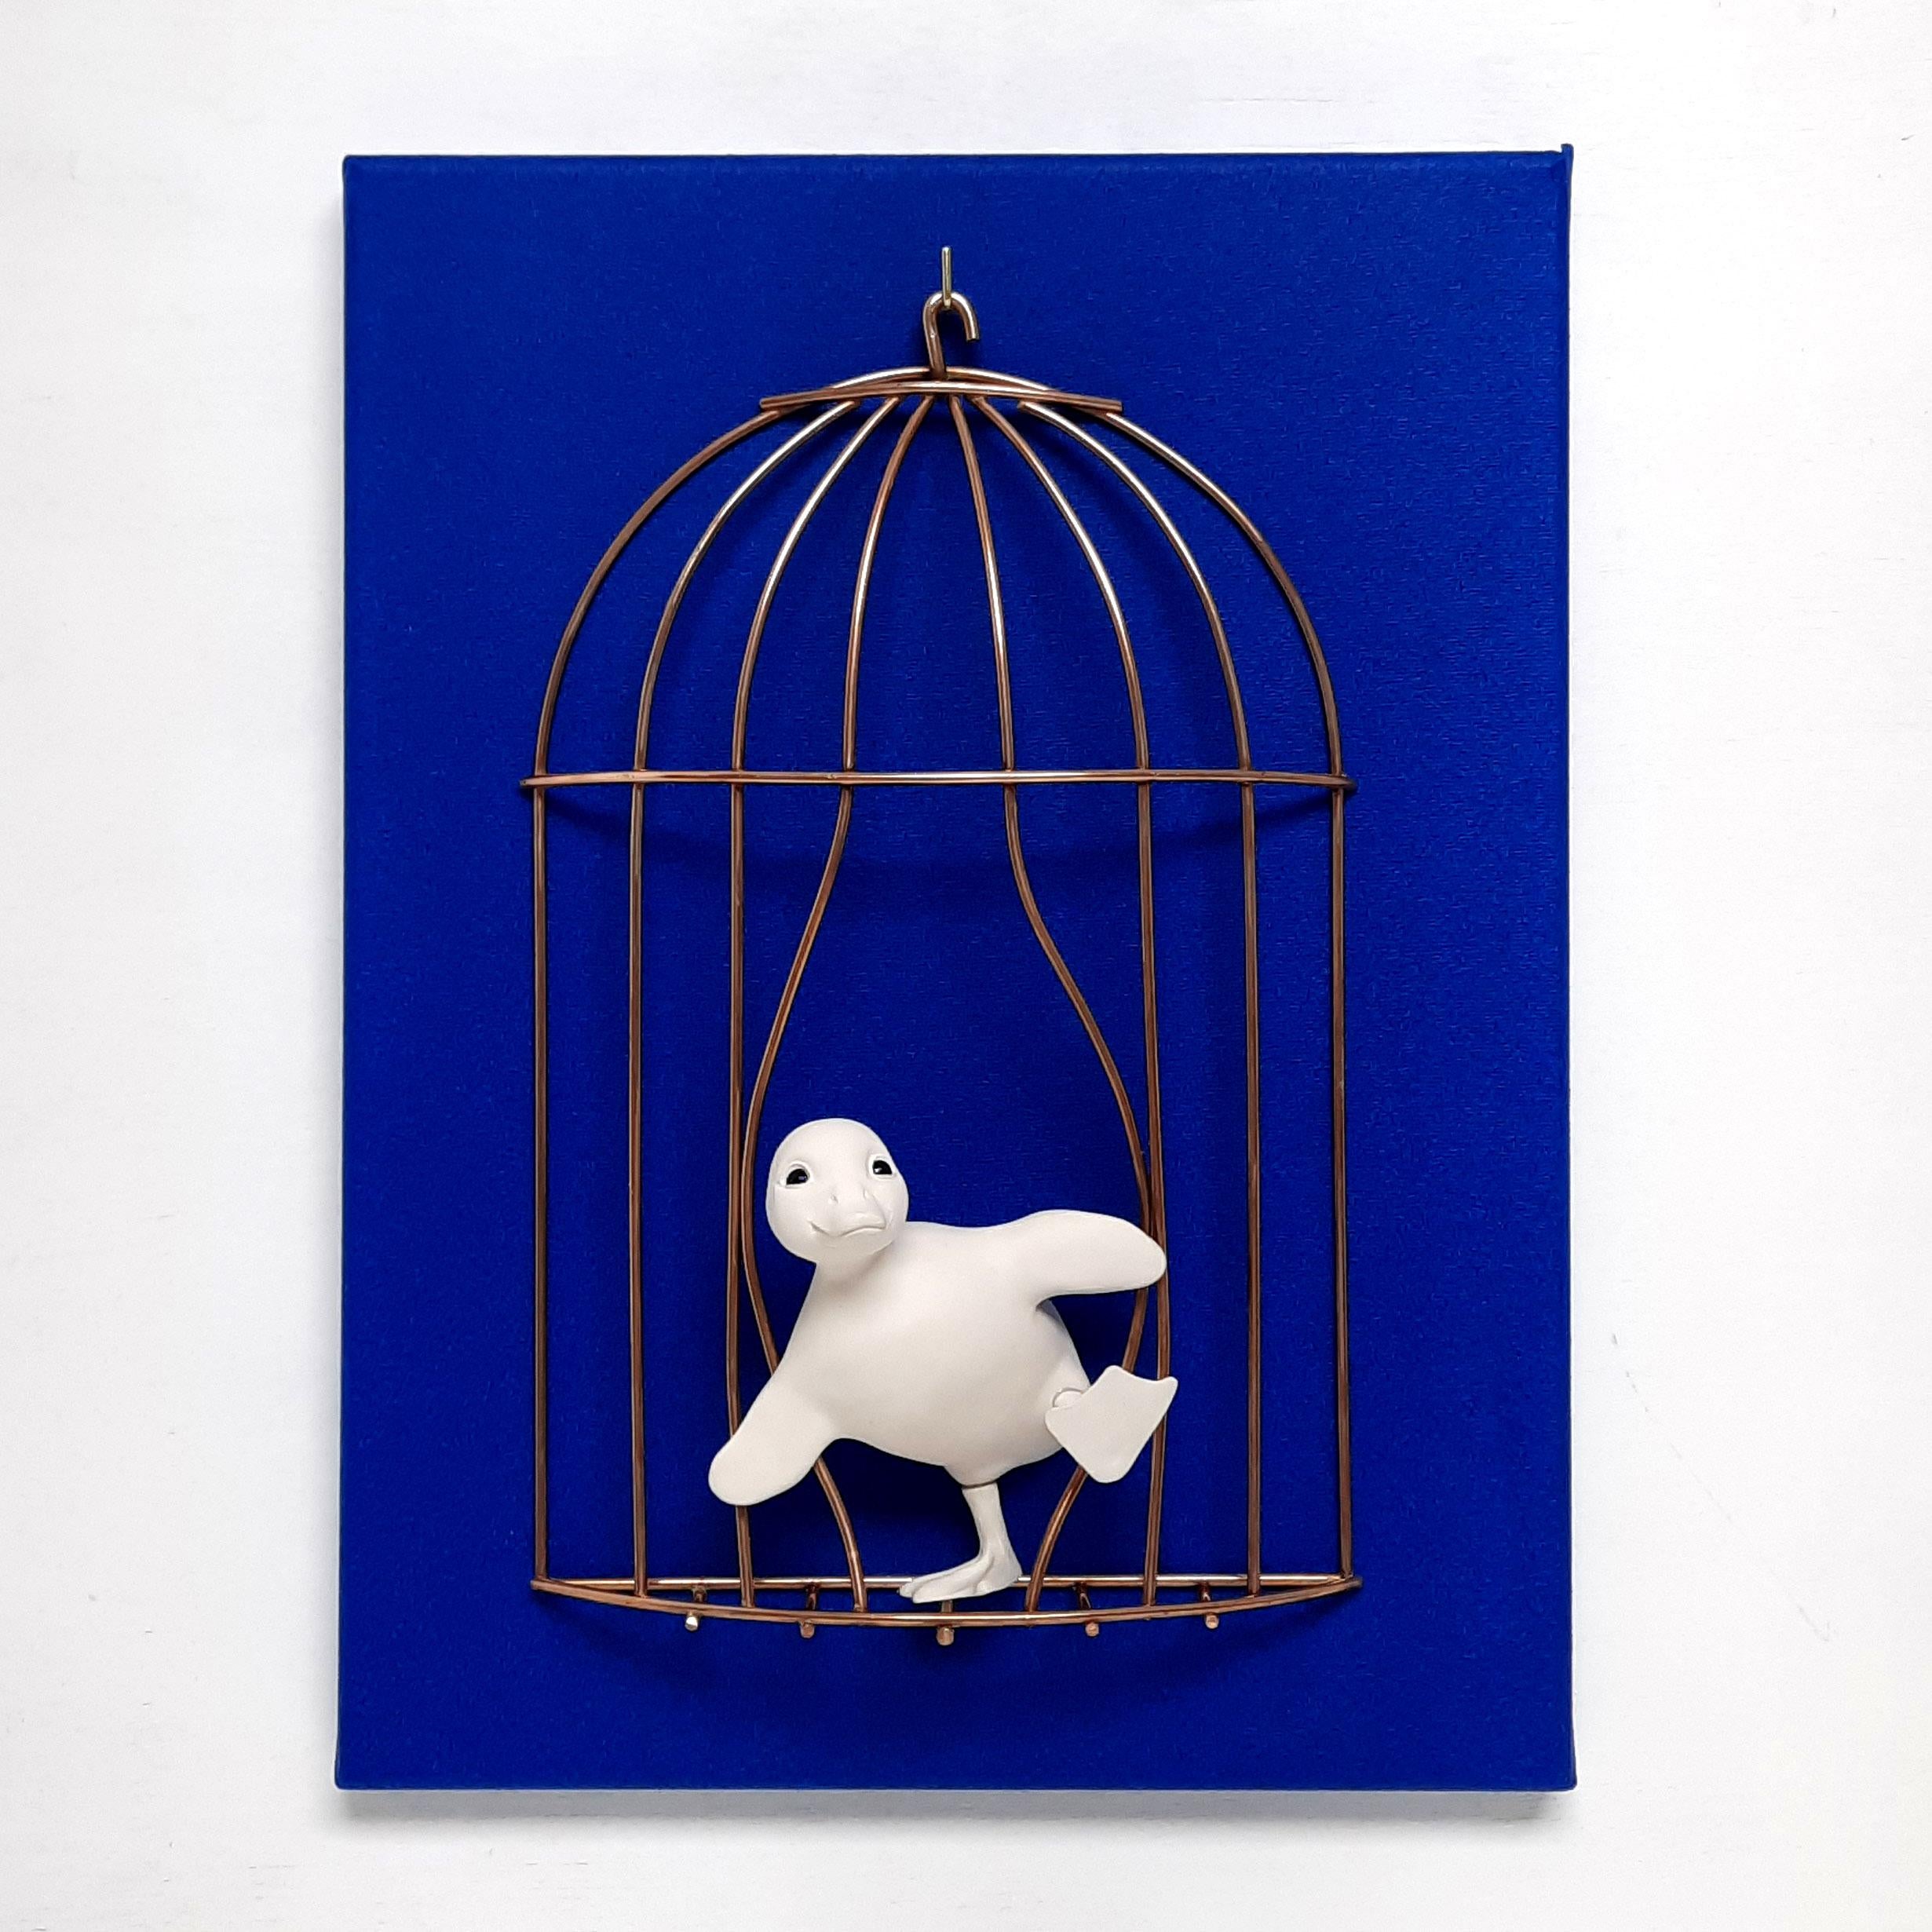 Break Free Duckling-originale realistische Skulptur-Gemälde-zeitgenössisches Kunstwerk – Sculpture von Henk Jan Sanderman